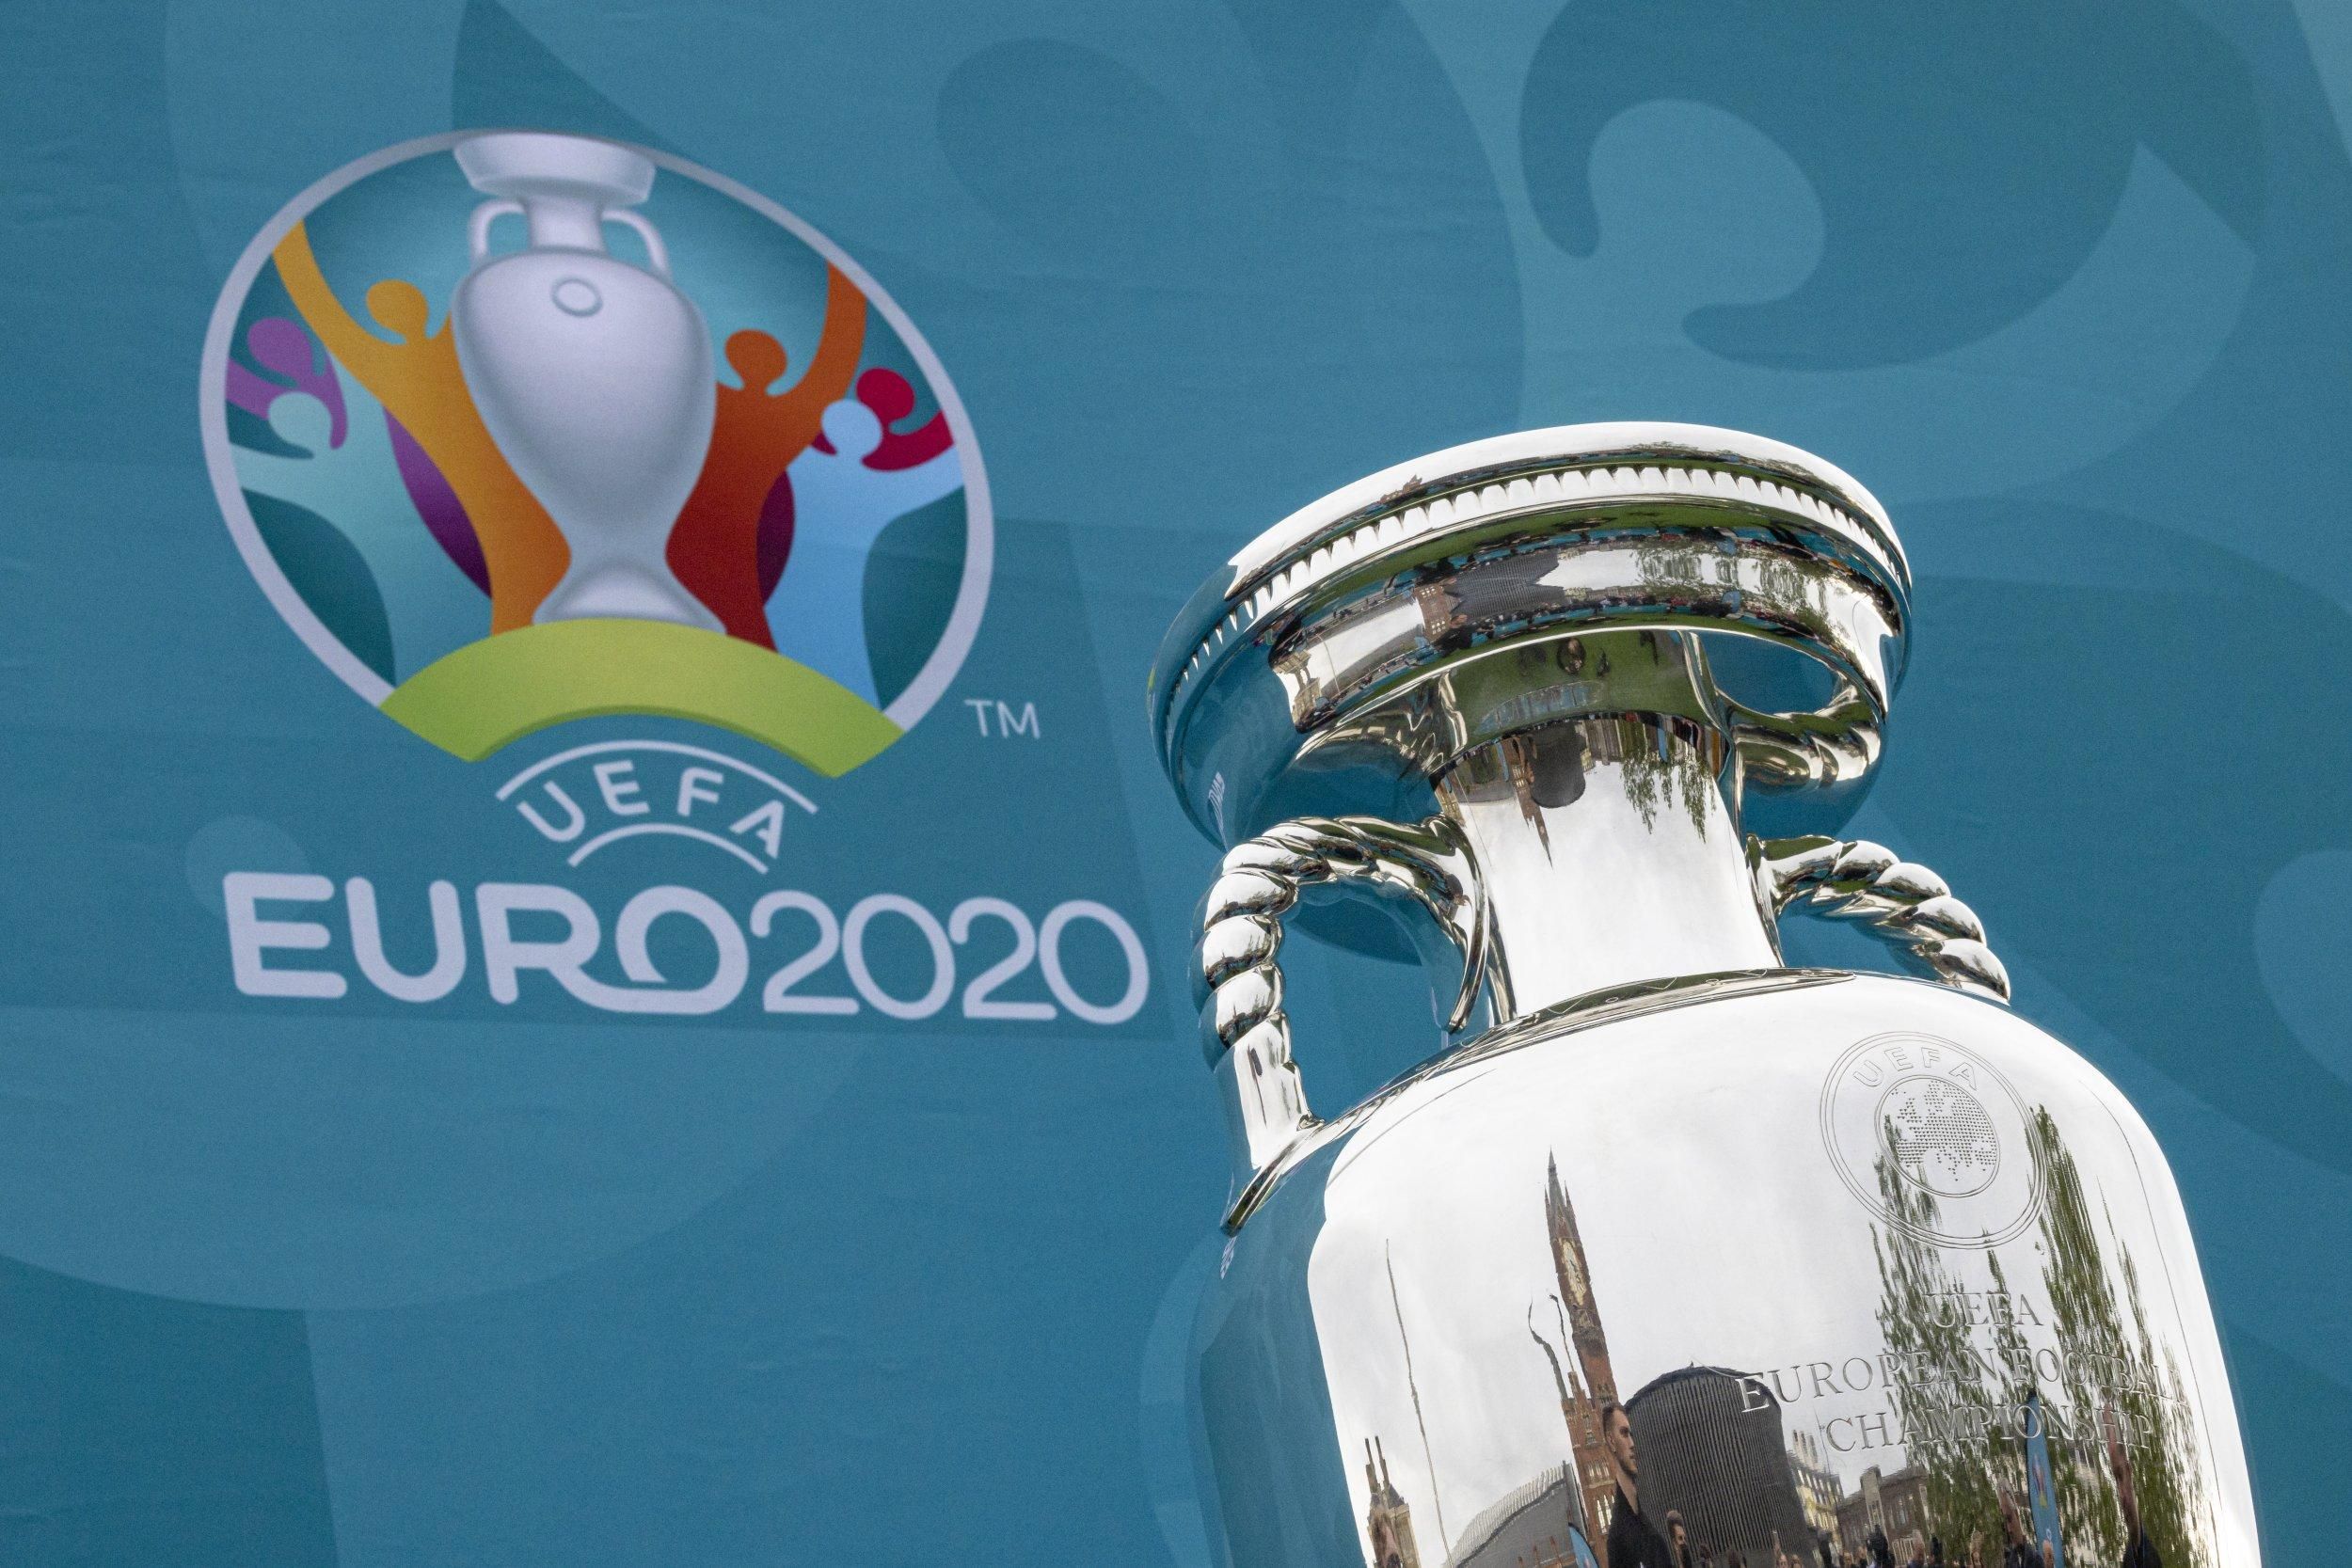 УЕФА хочет увеличить количество участников на Евро 2028 до 32 команд